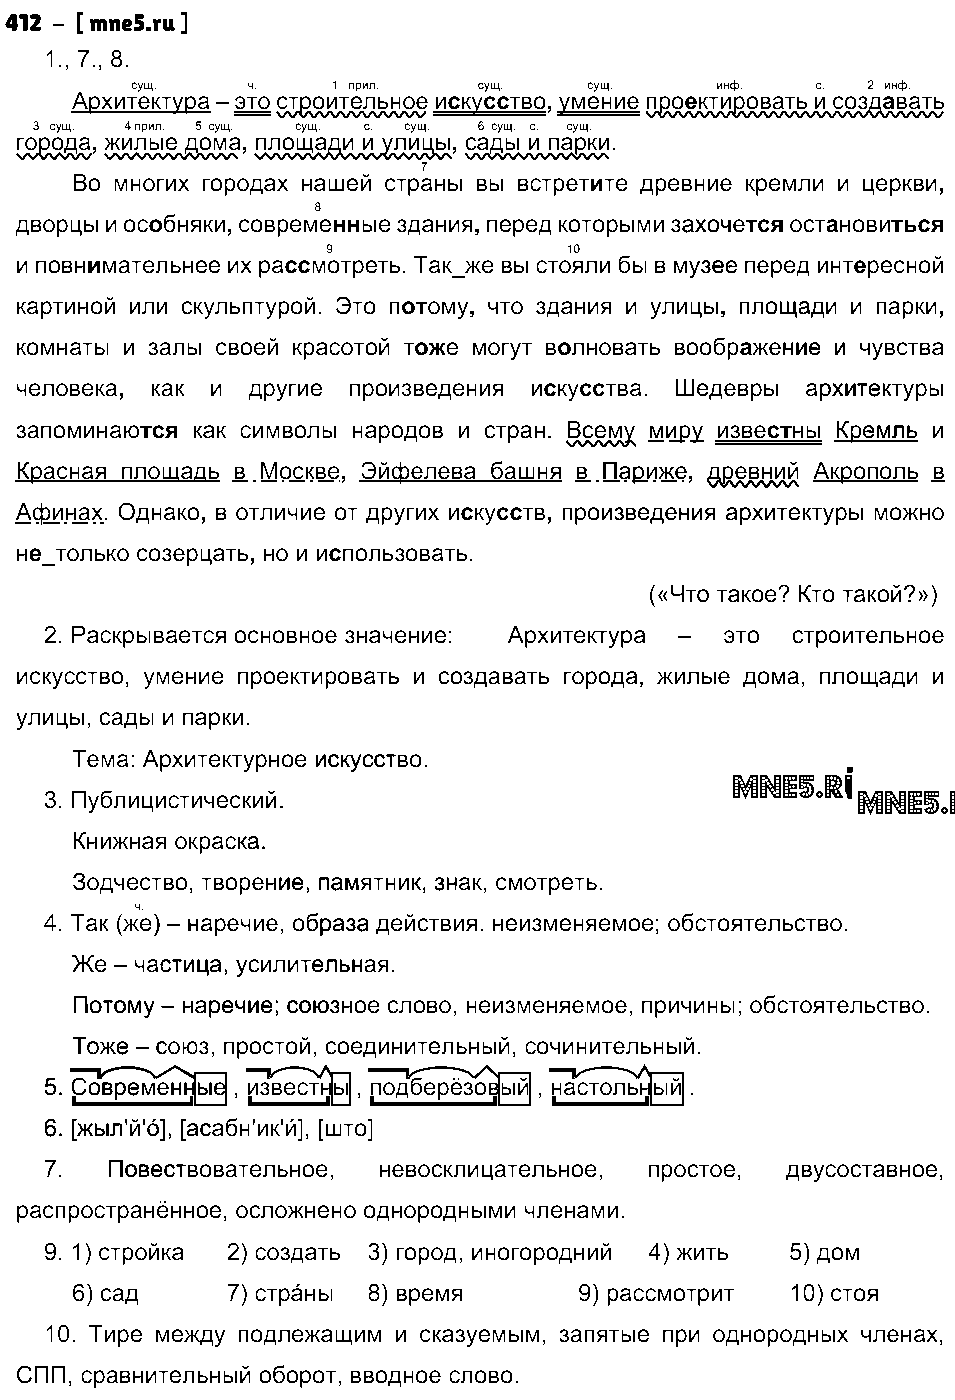 ГДЗ Русский язык 8 класс - 412